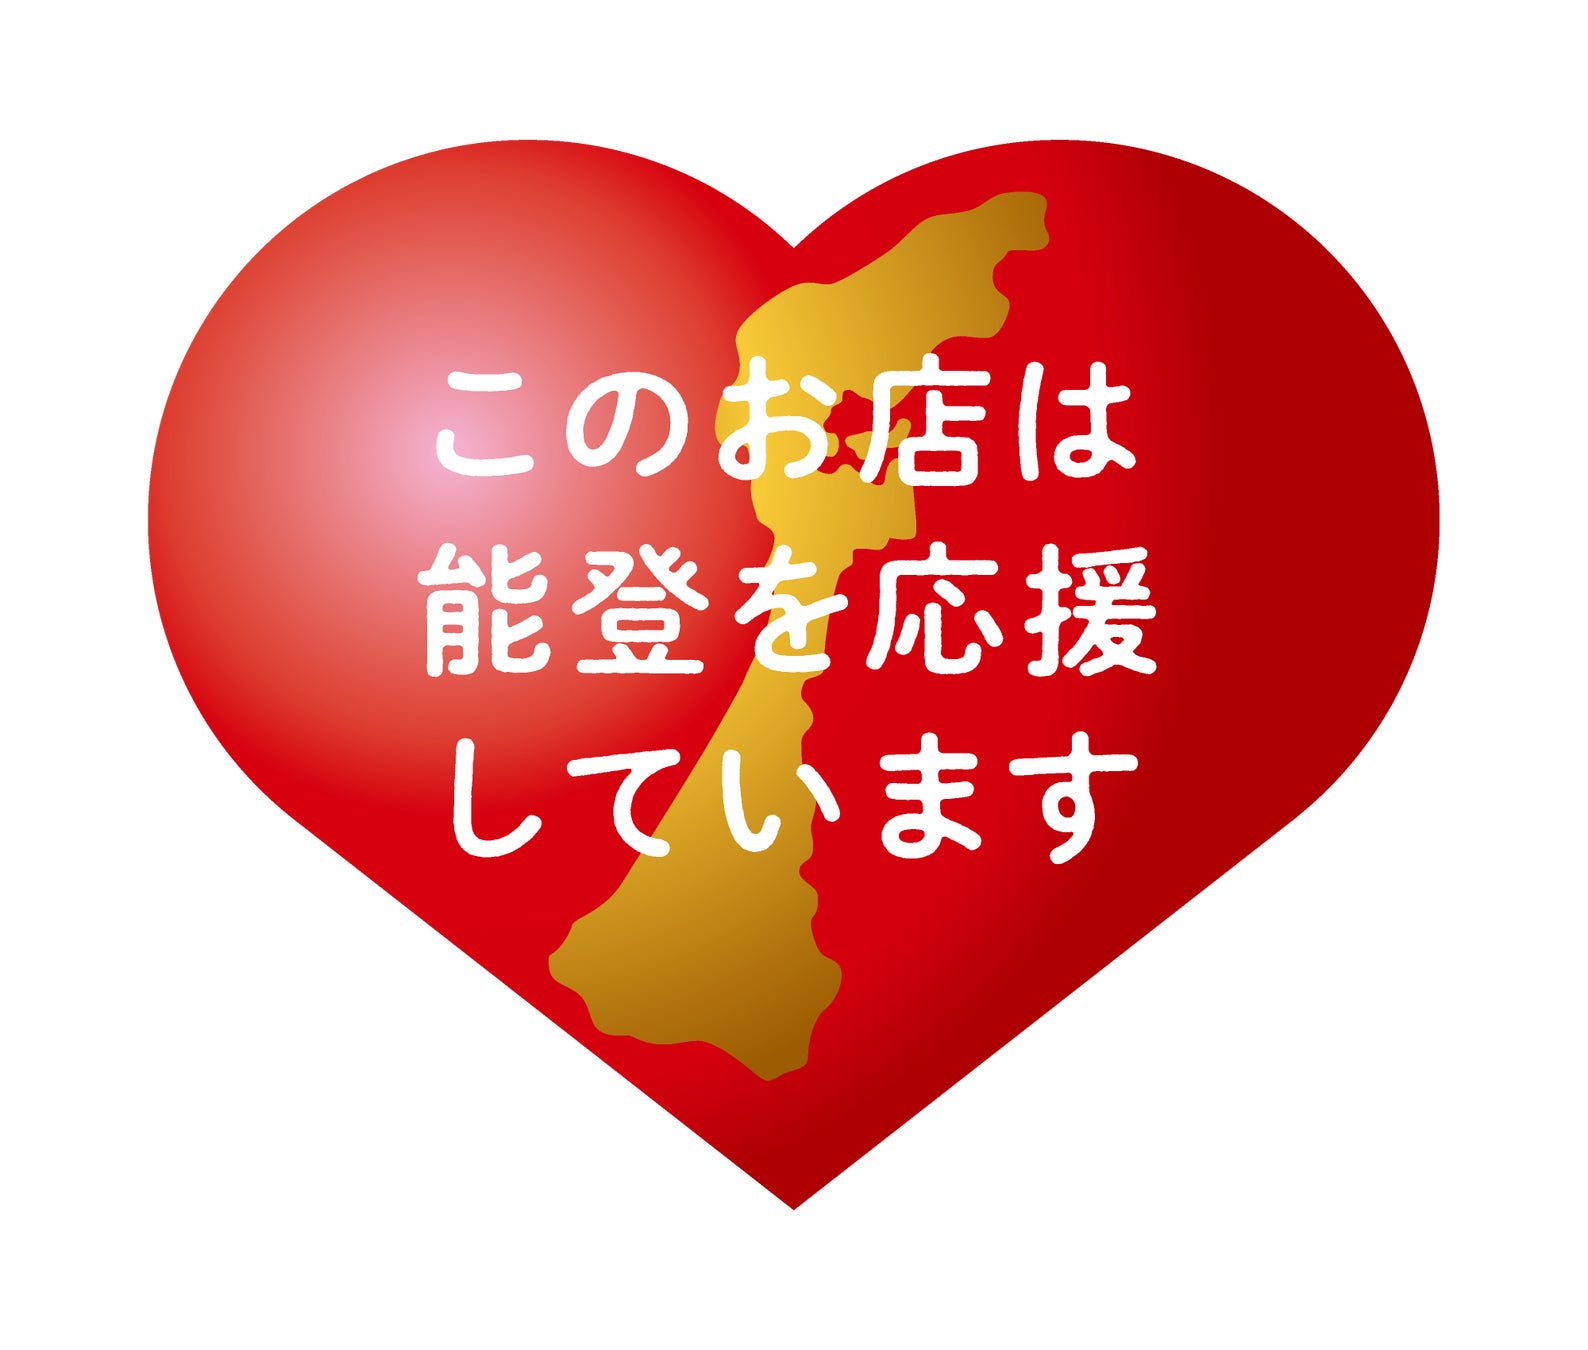 買って・食べて石川県の復興を応援！『能登のために、石川のために 応援消費おねがいプロジェクト』開始